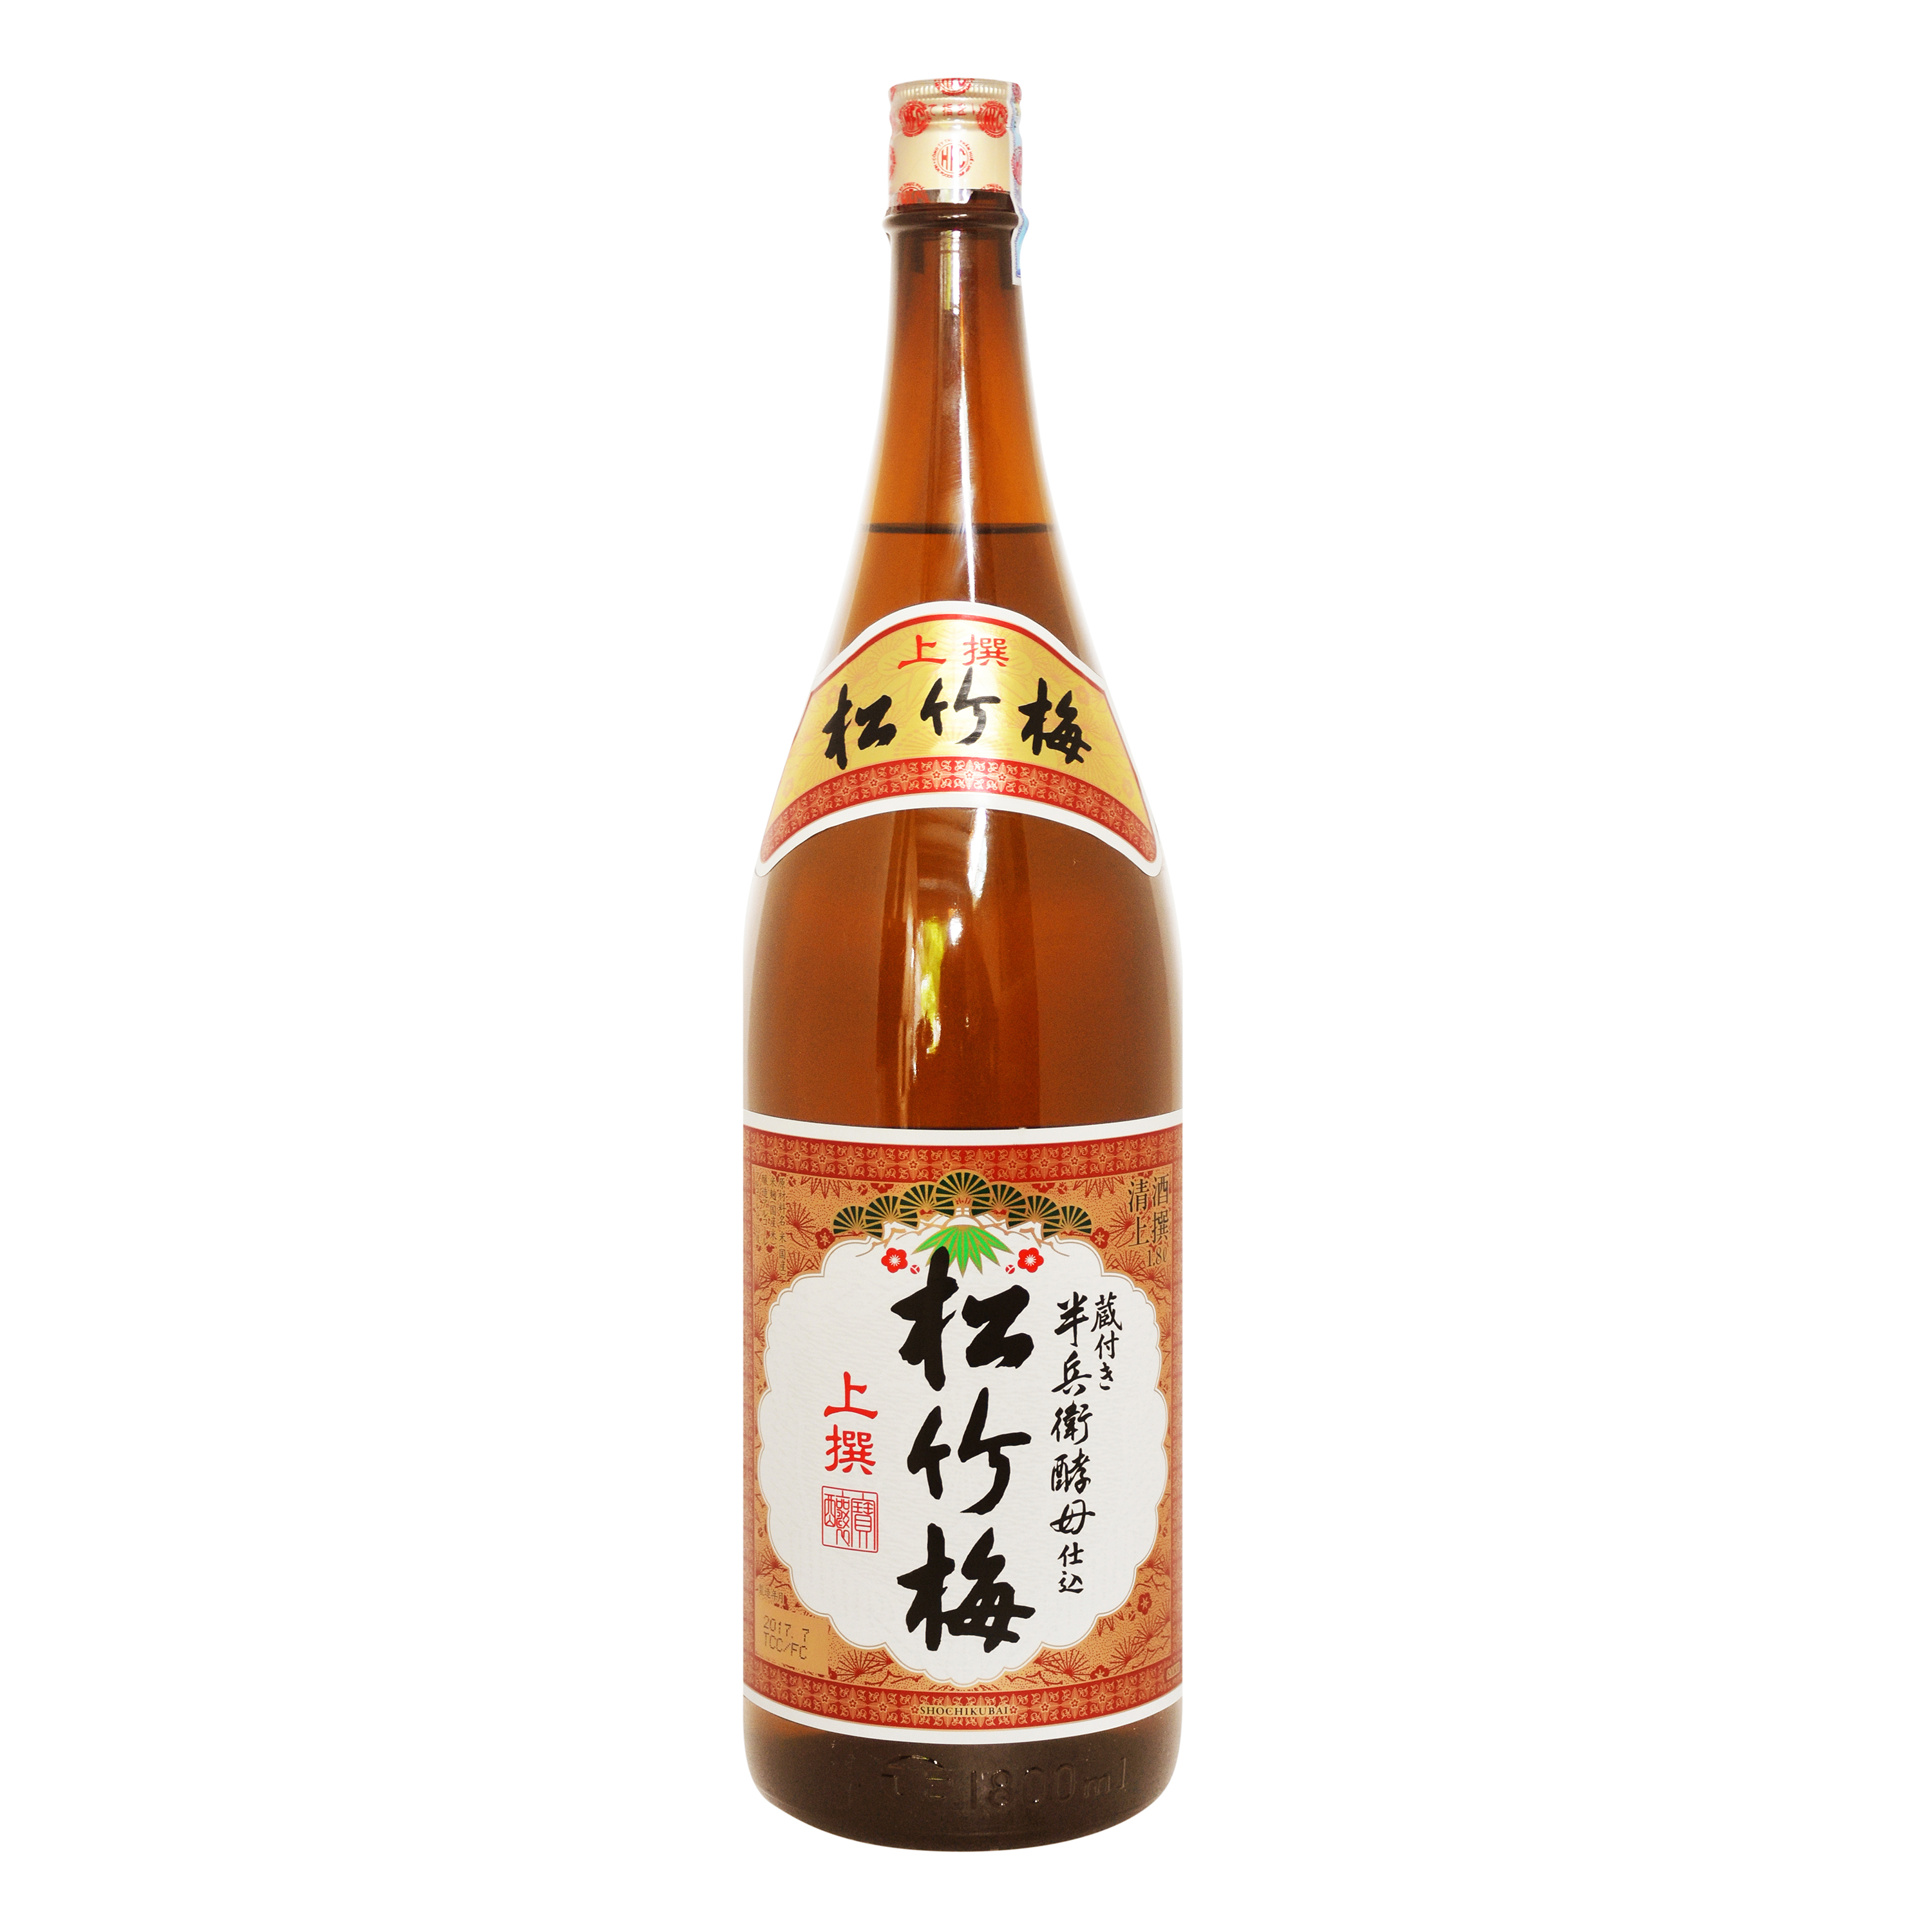 Rượu Sake Sho chikubai Josen 1800ml 15%